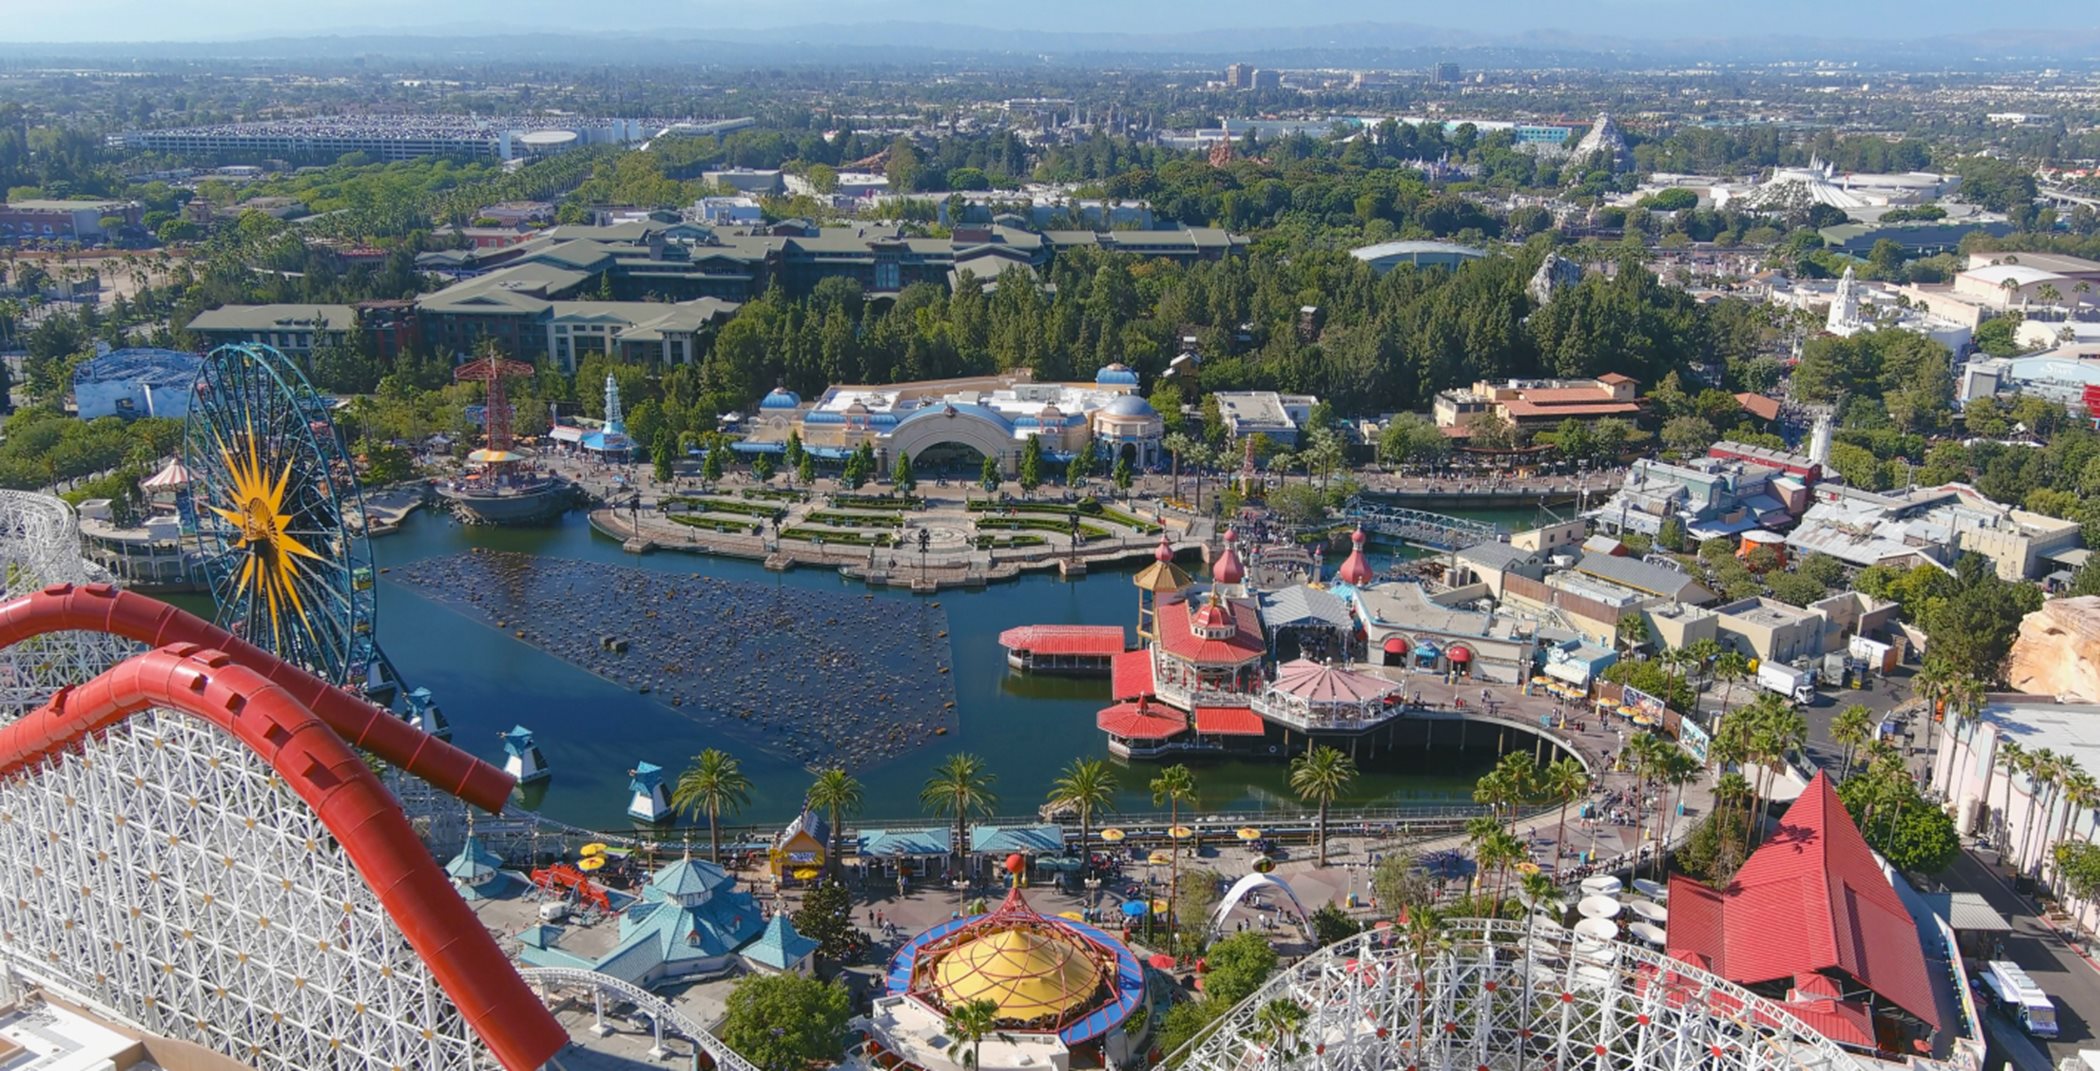 Disneyland aerial view